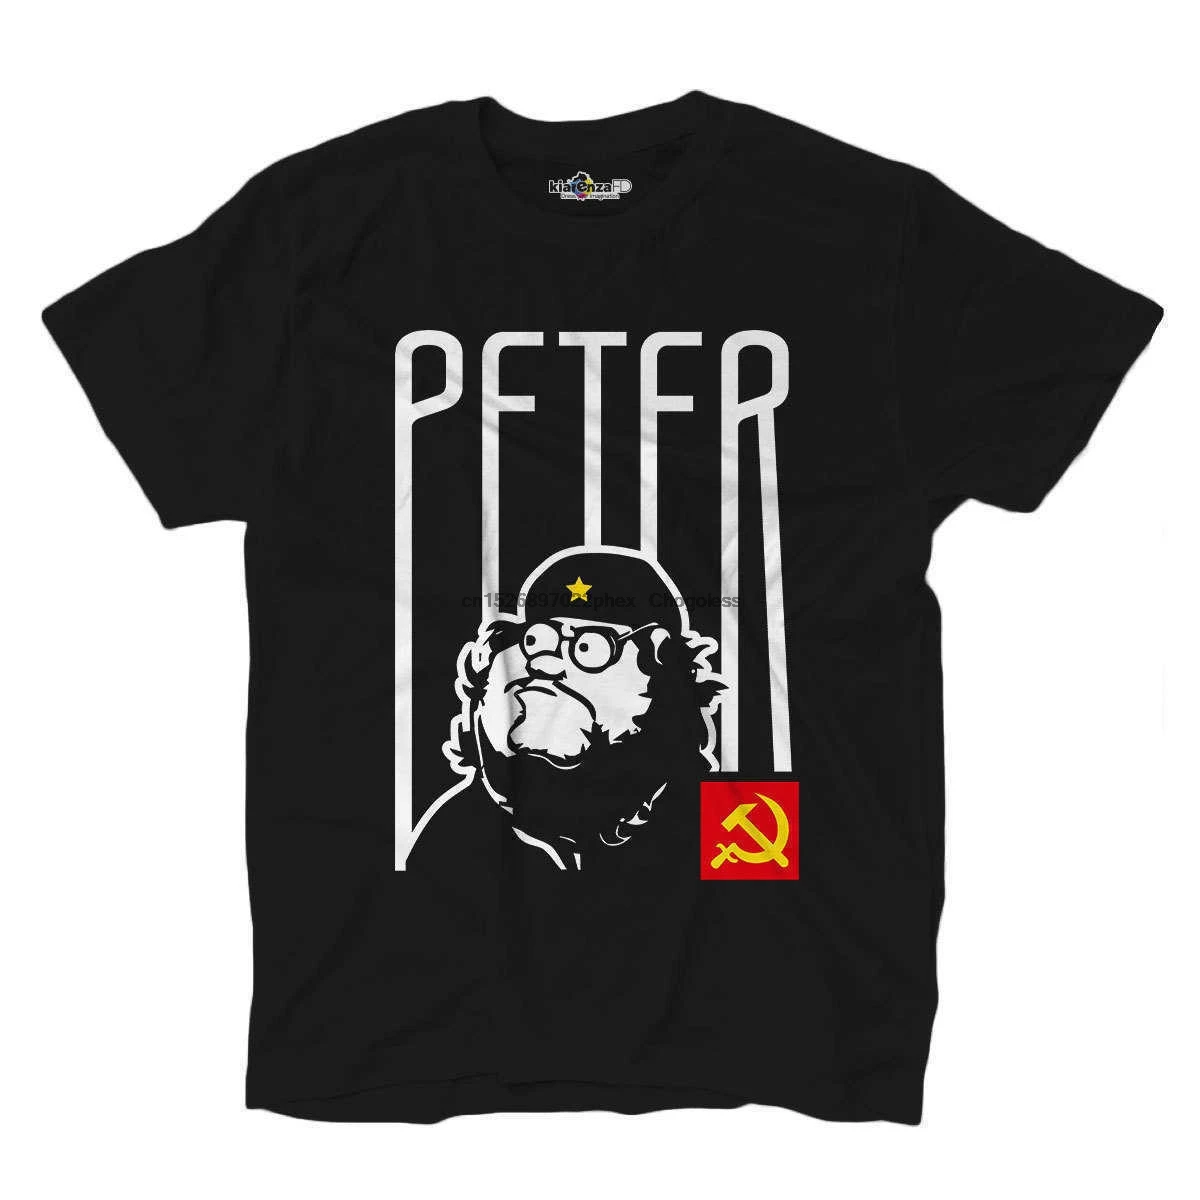 

Рубашка, футболка, Коммунистический Питер, мультфильм Гриффин, мультфильмы, развлечение